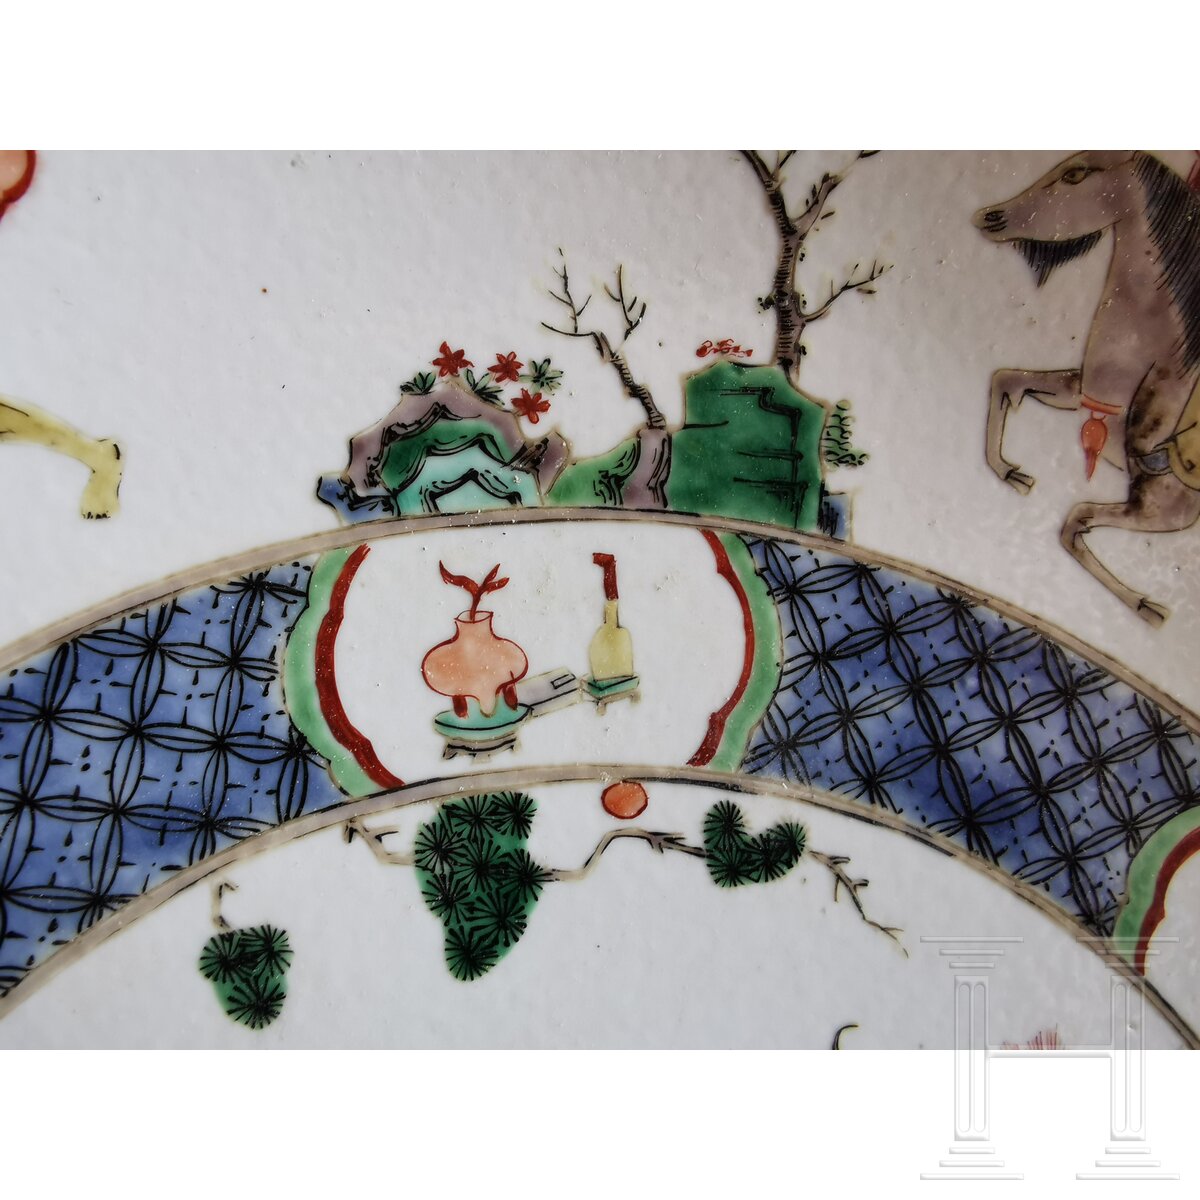 Zwei große Famille-verte-Teller mit figürlichem Dekor, China, wohl Kangxi-Periode (18. Jhdt.) - Image 32 of 41